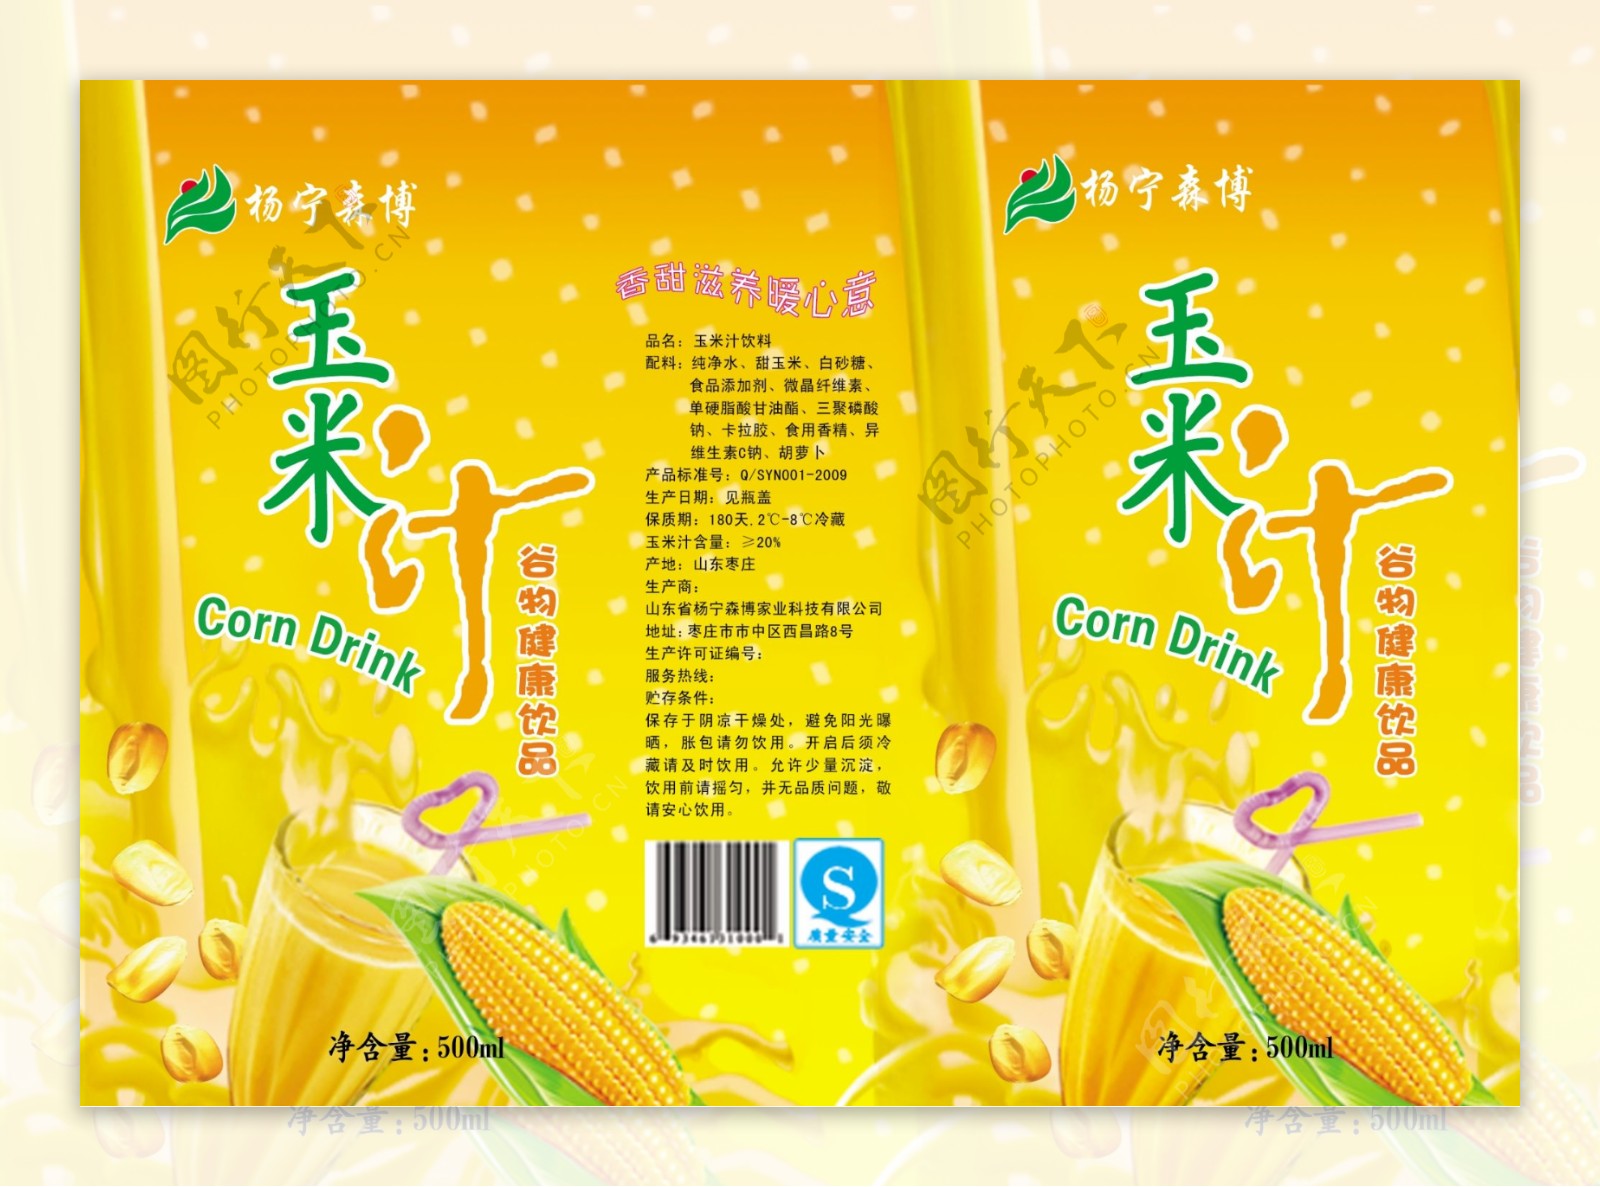 玉米汁包装广告设计PSD素材